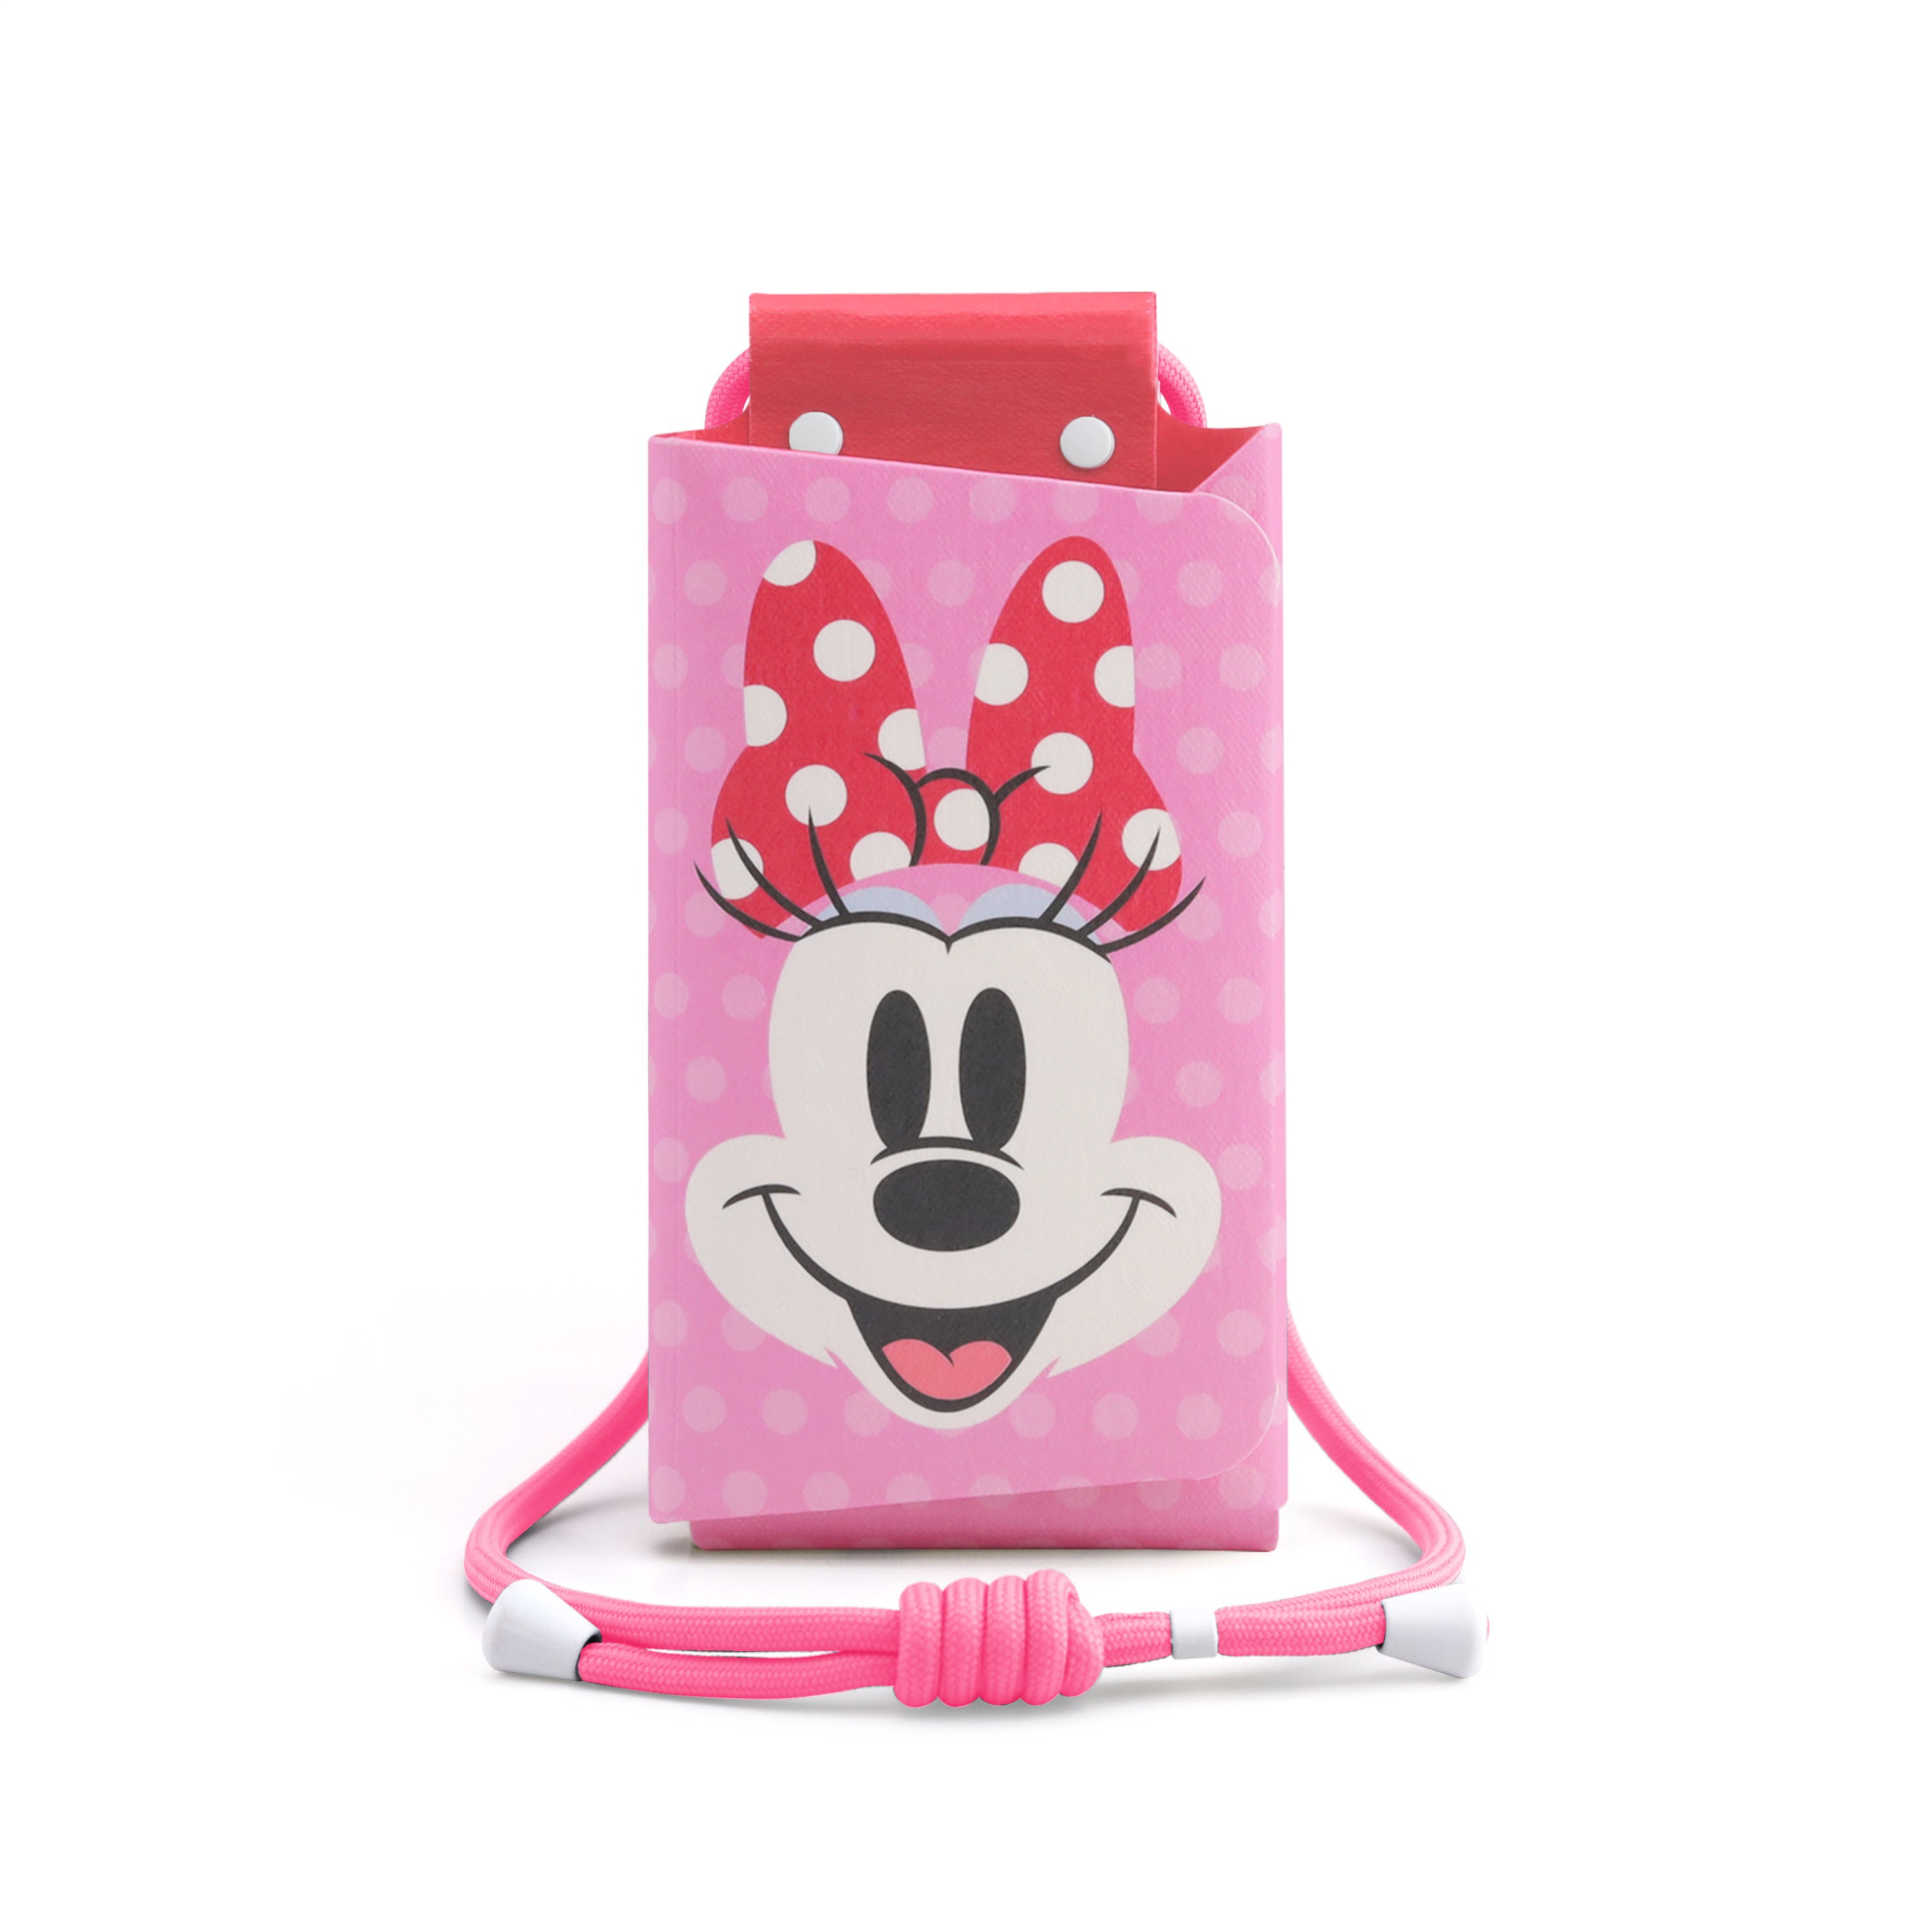 PhonePochette 手機隨身袋 [Disney 100 - Minnie]